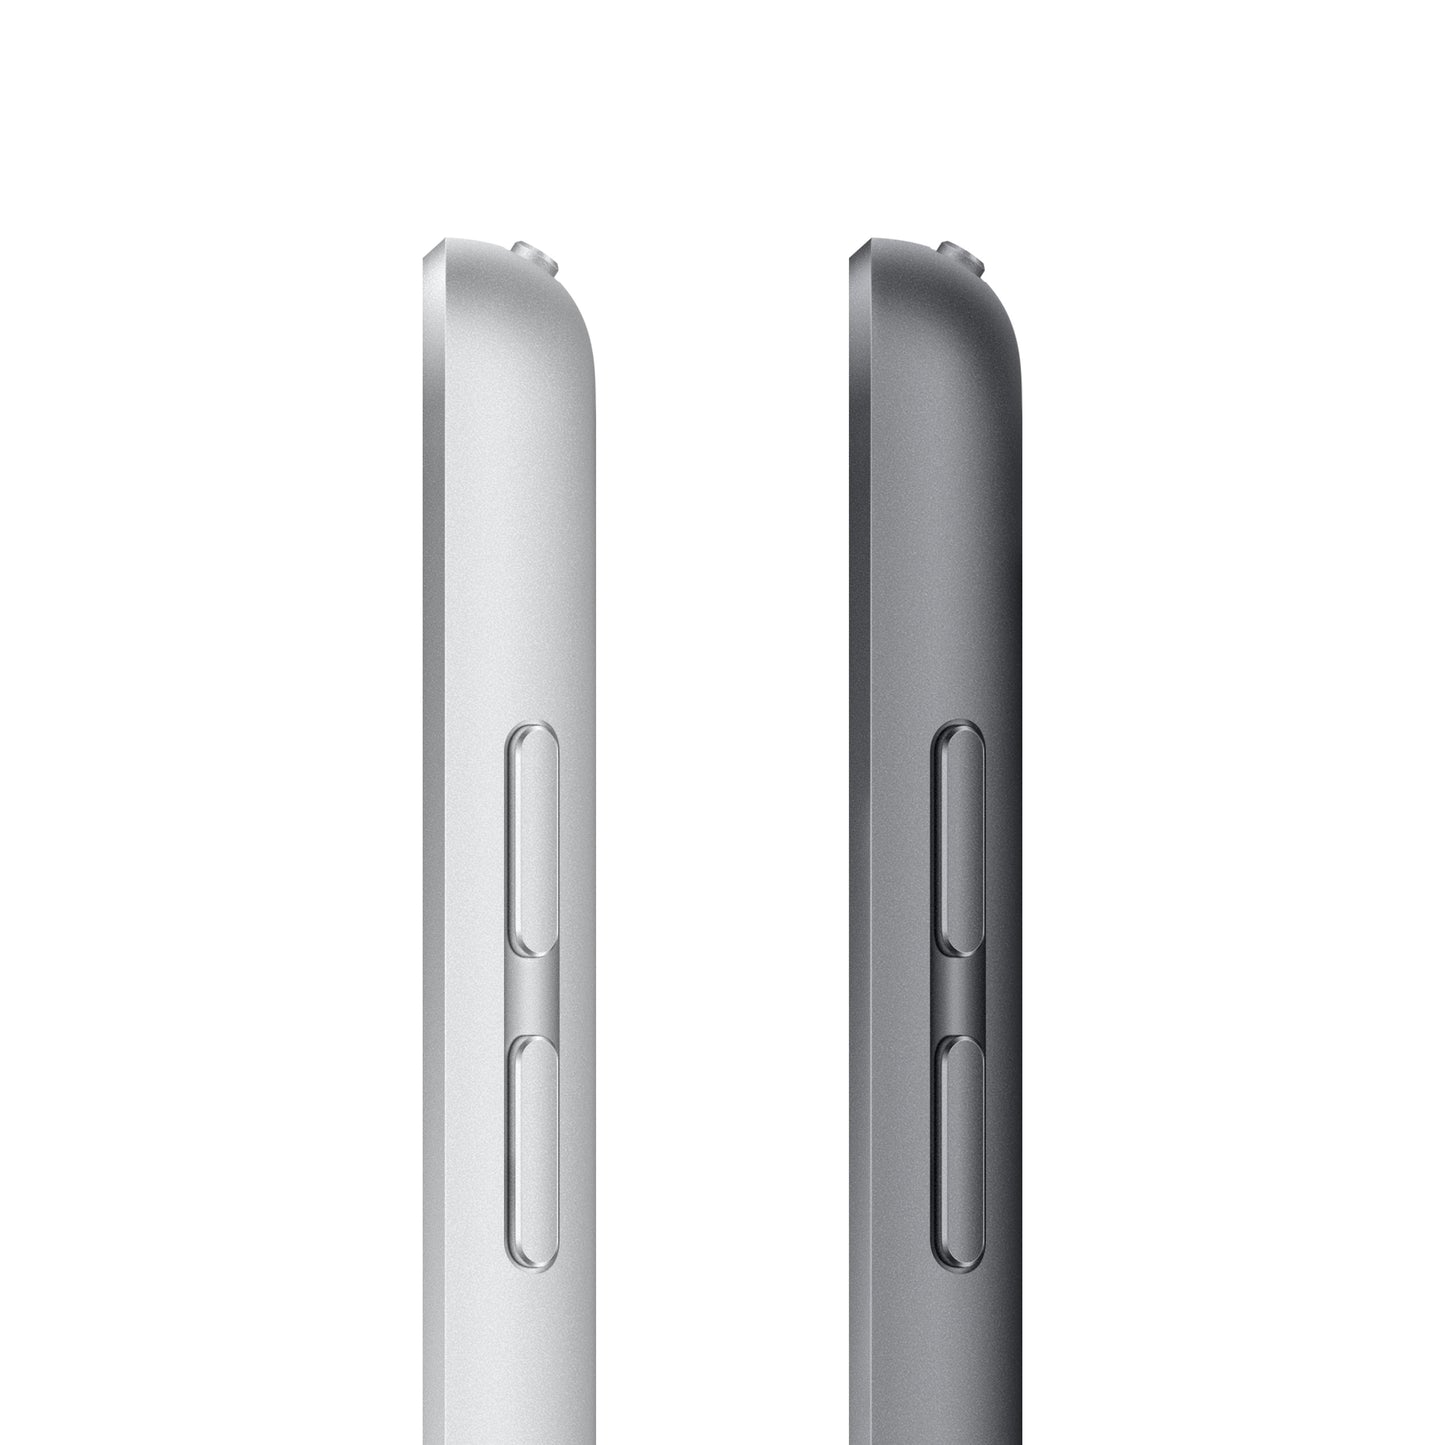 2021 10.2-inch iPad Wi-Fi + Cellular 64GB - Space Grey (9th generation)